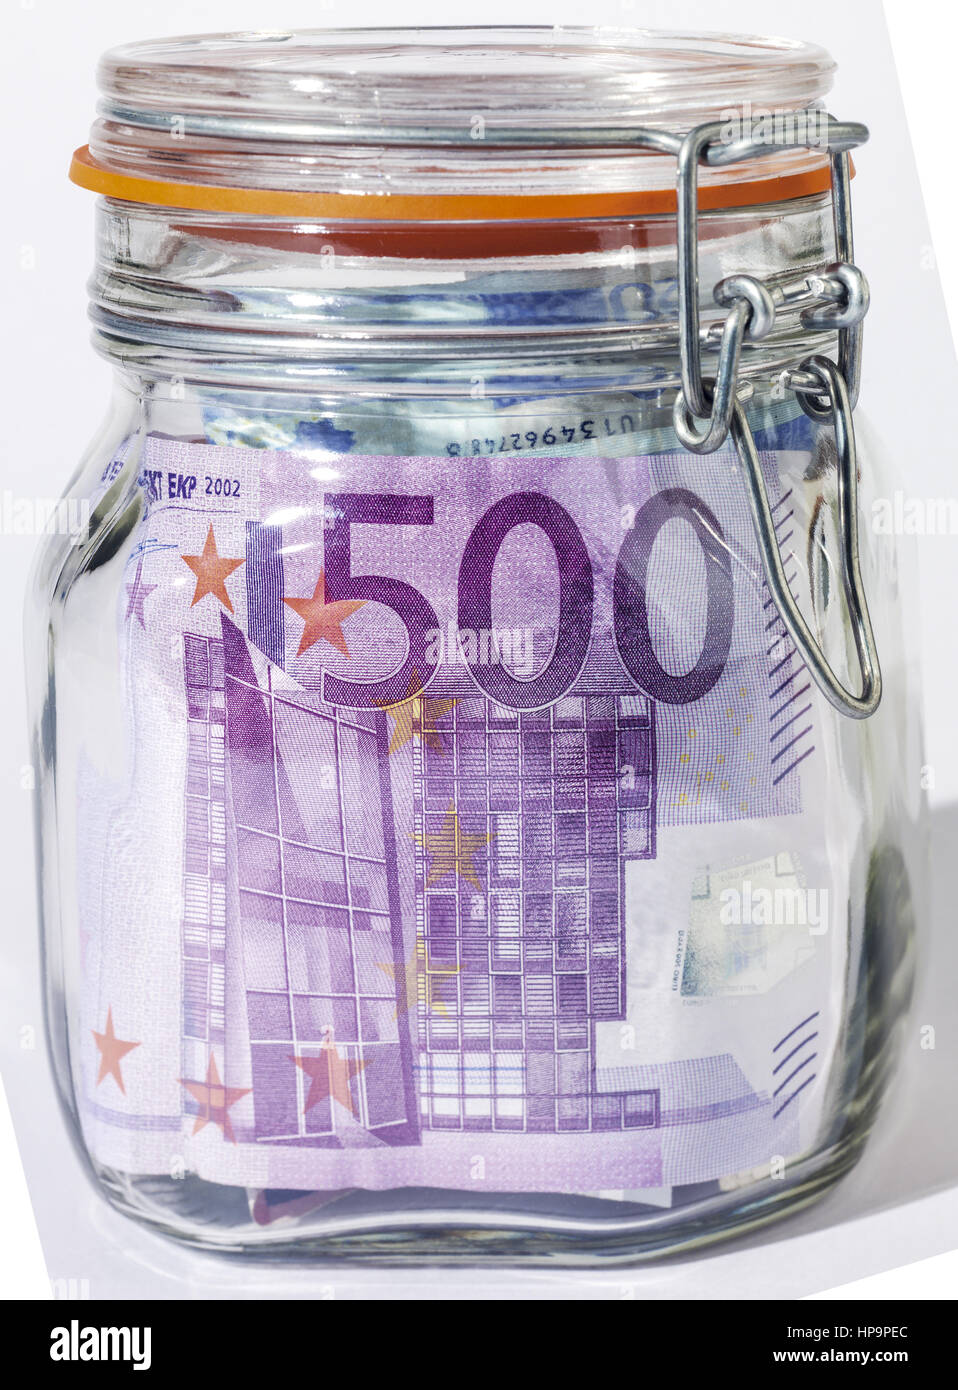 Euroscheine in Einmachglas Stock Photo